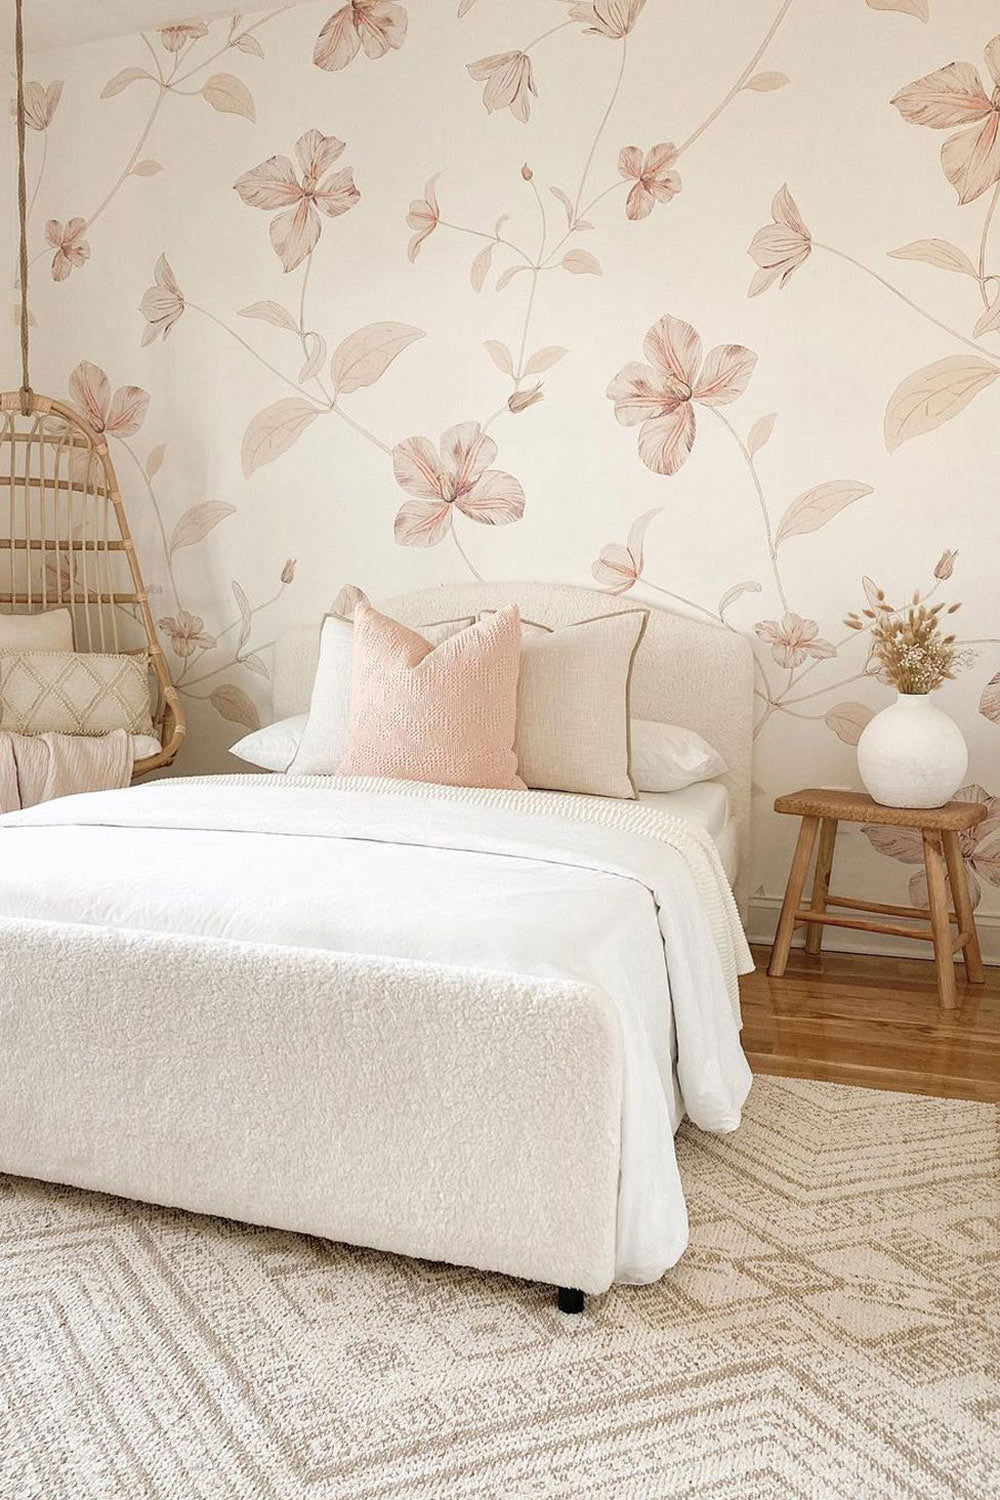 Soft Floral Mural Girls Bedroom Design